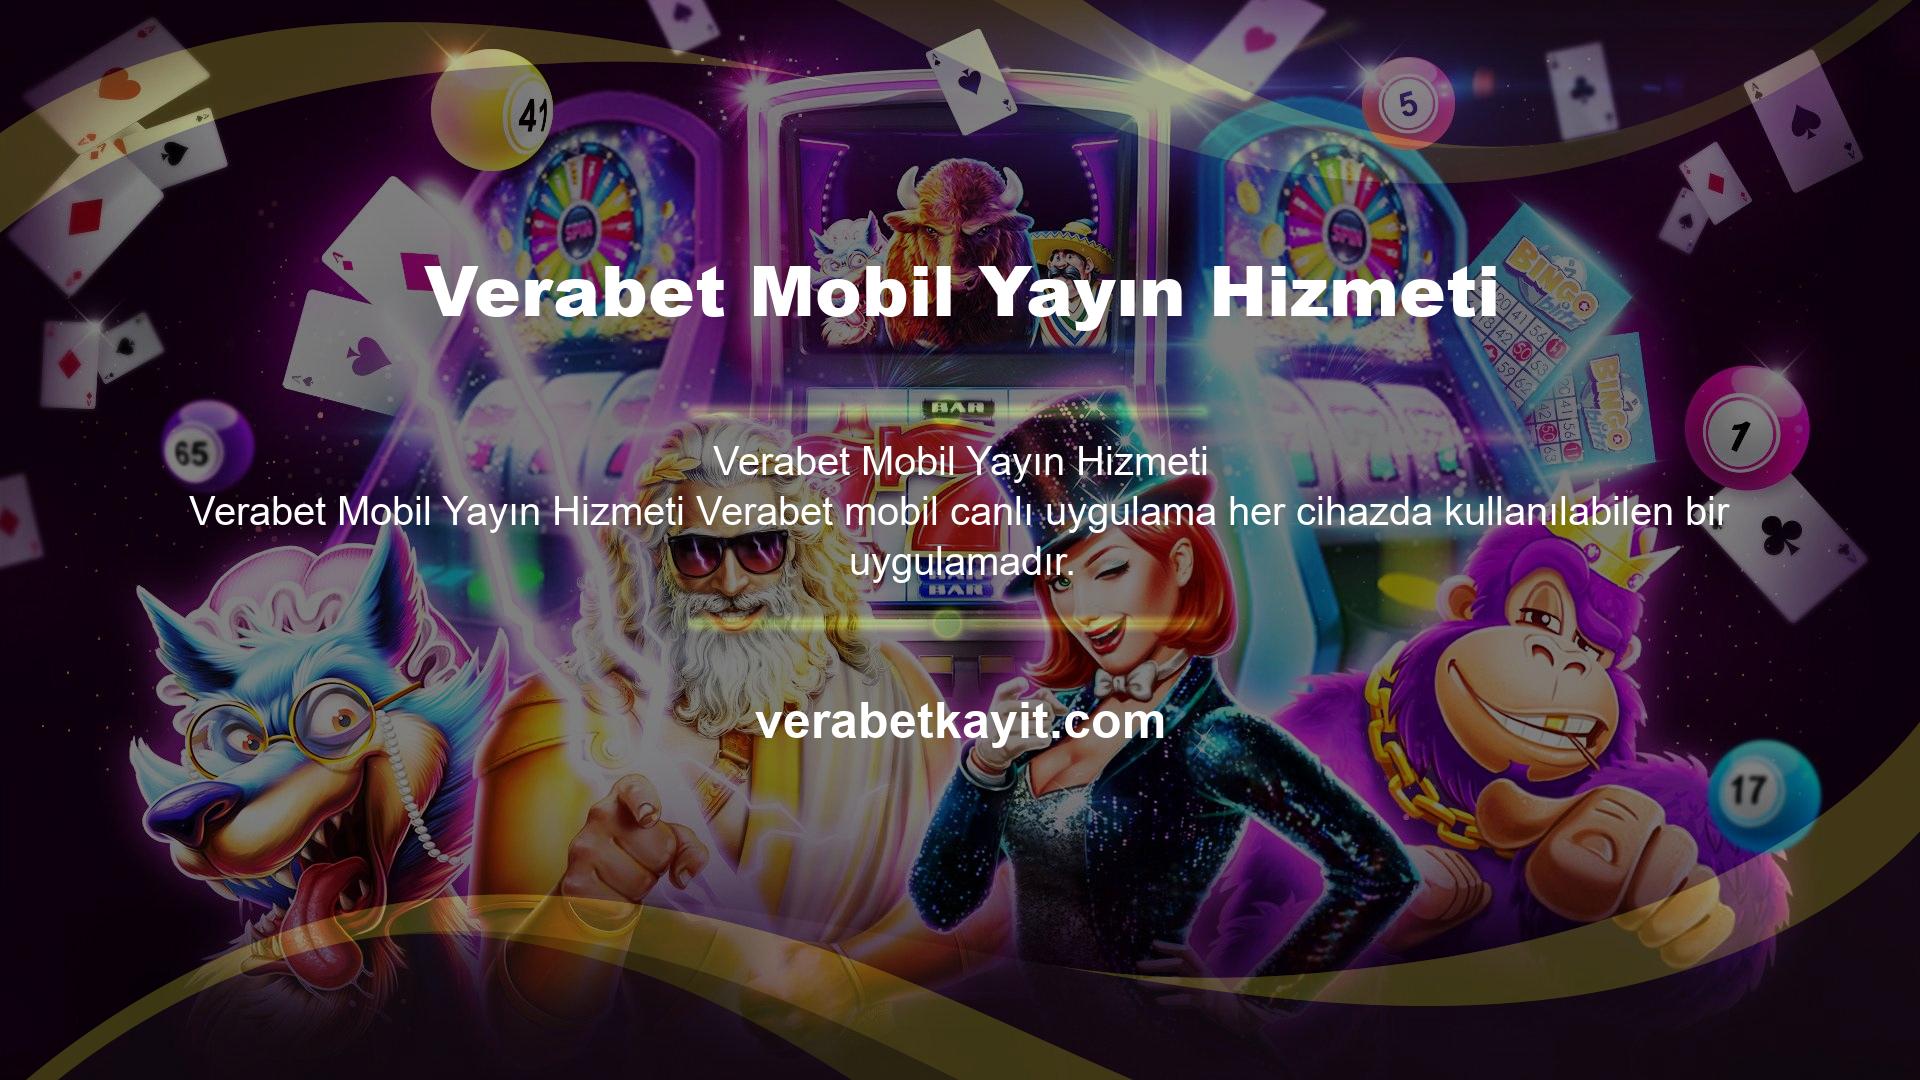 Verabet, bir mobil web sitesi ve çevrimiçi platform olarak bilinen müşteri odaklı bir web sitesi geliştirdi